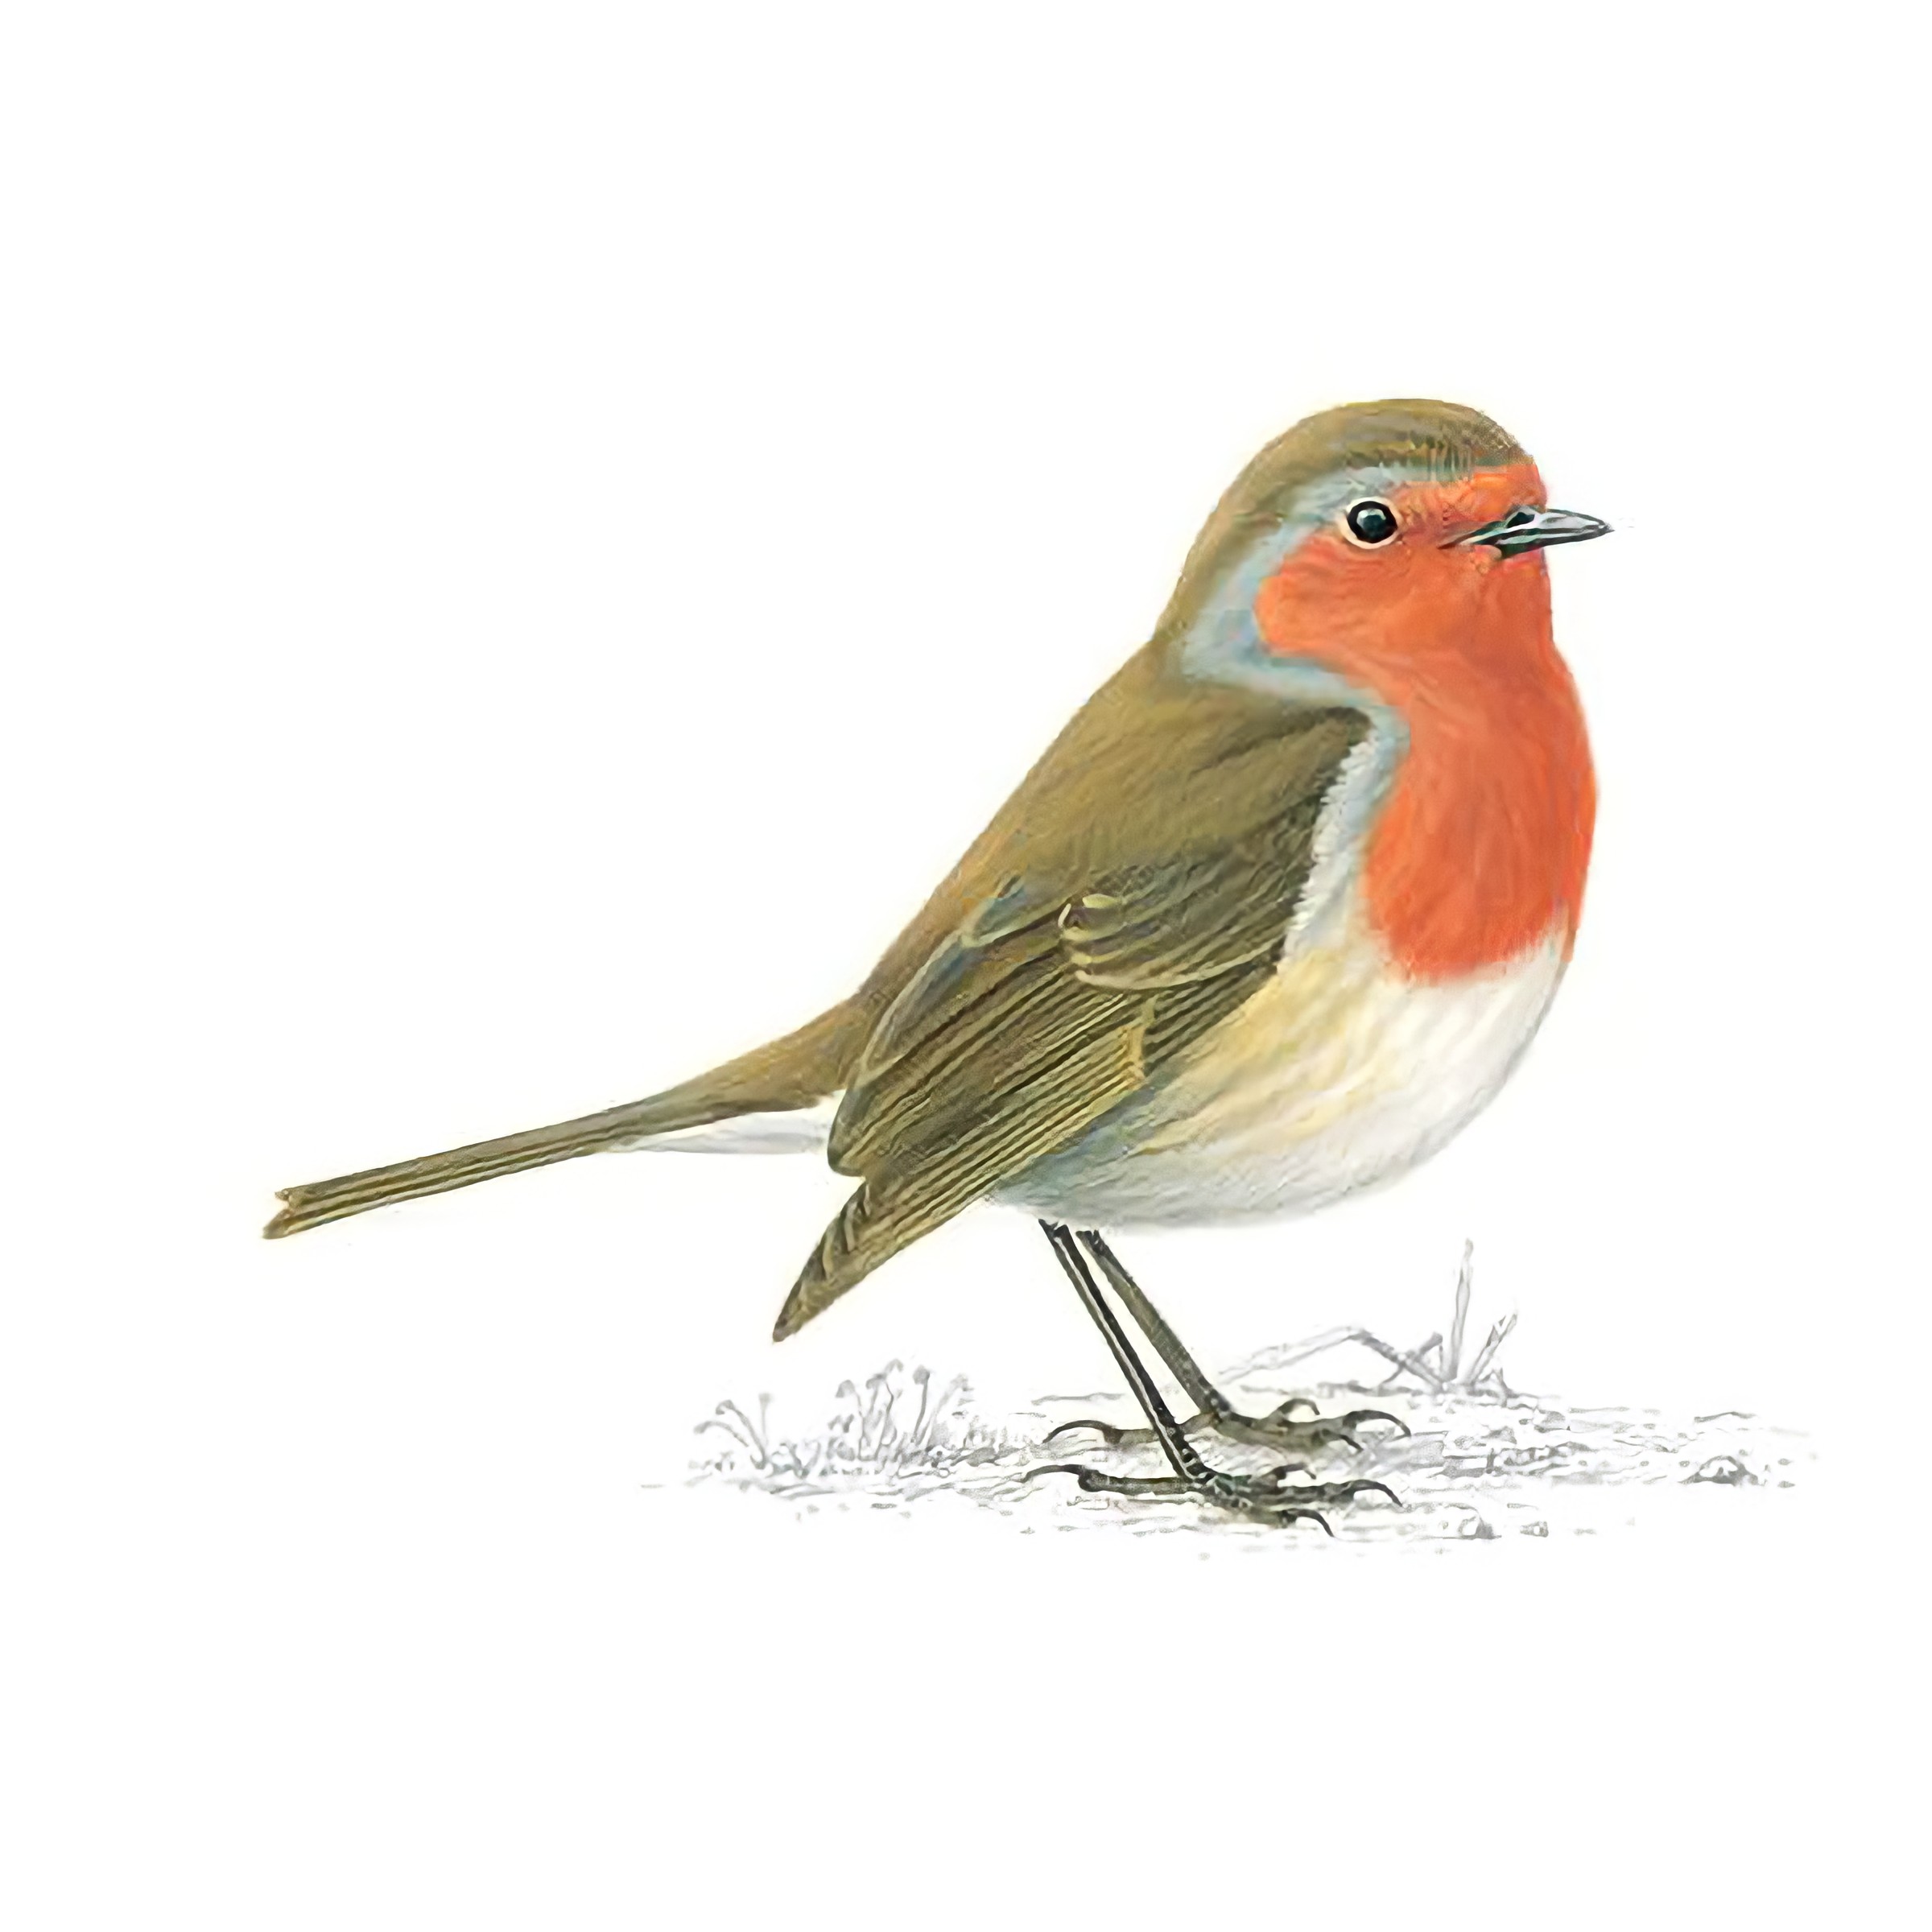 The Robin – Britain's Favourite Bird